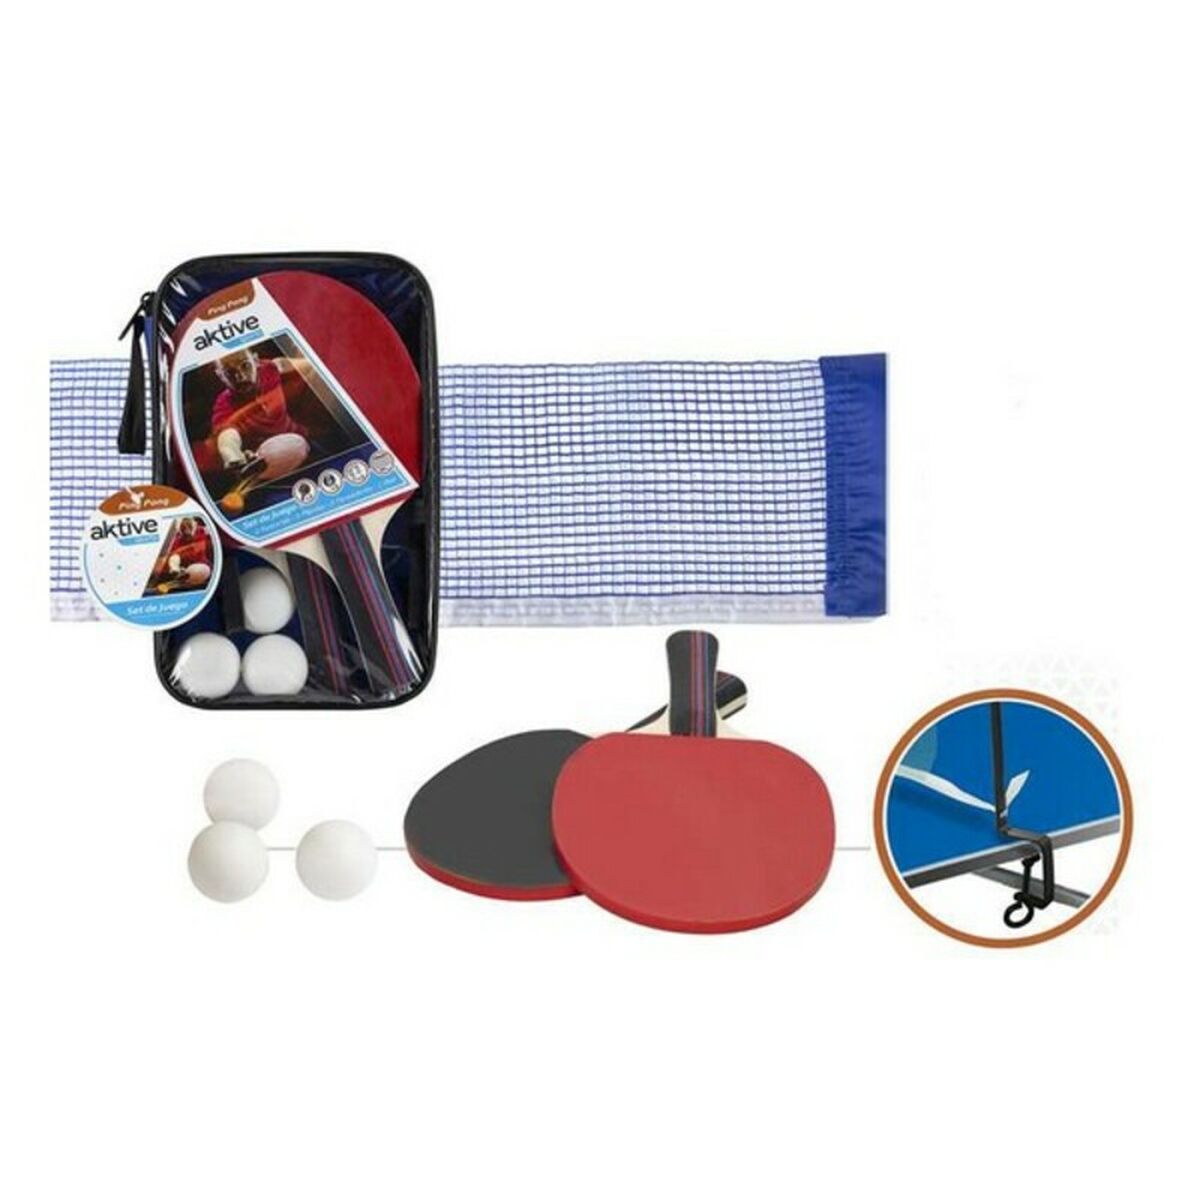 Ping Pong Set Aktive Sports Aktive (6 pcs)